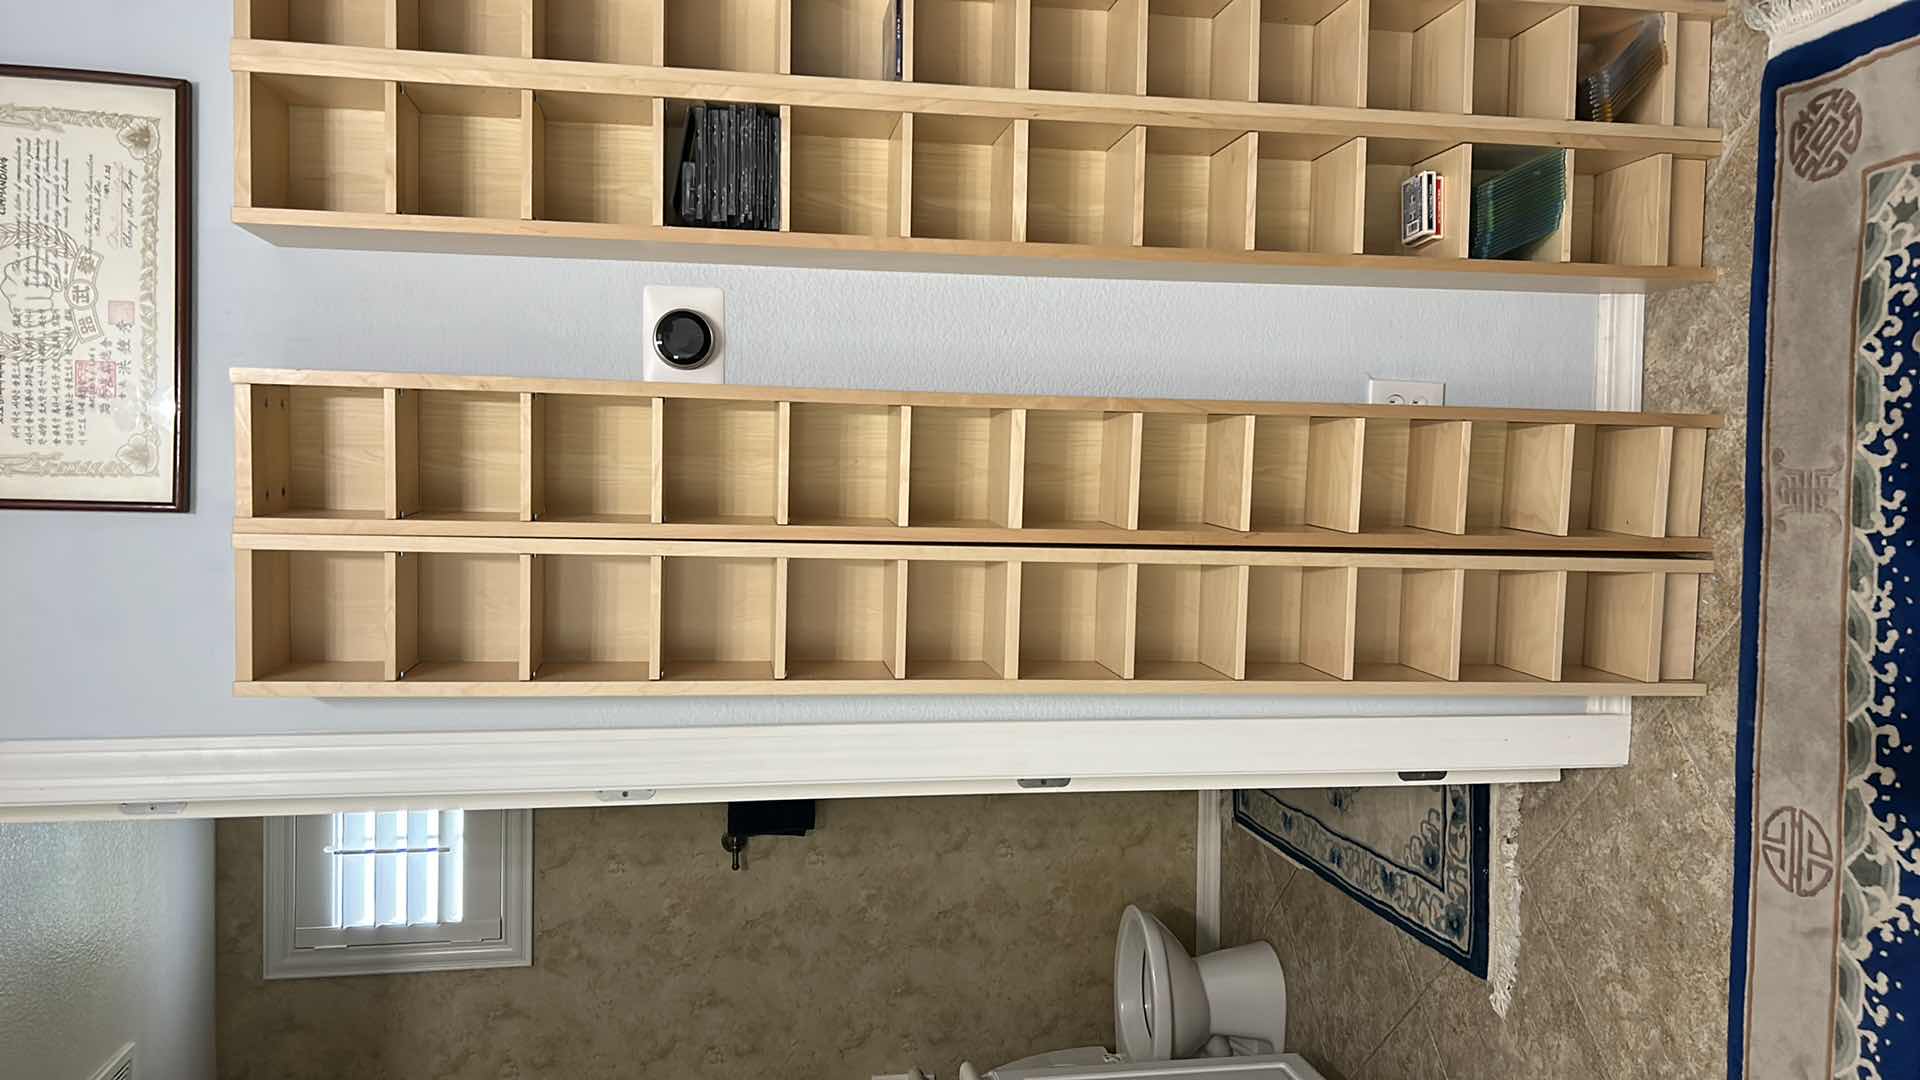 Photo 4 of 2 -  IKEA THIN SHELVING UNITS  8” x 7” x 80” each